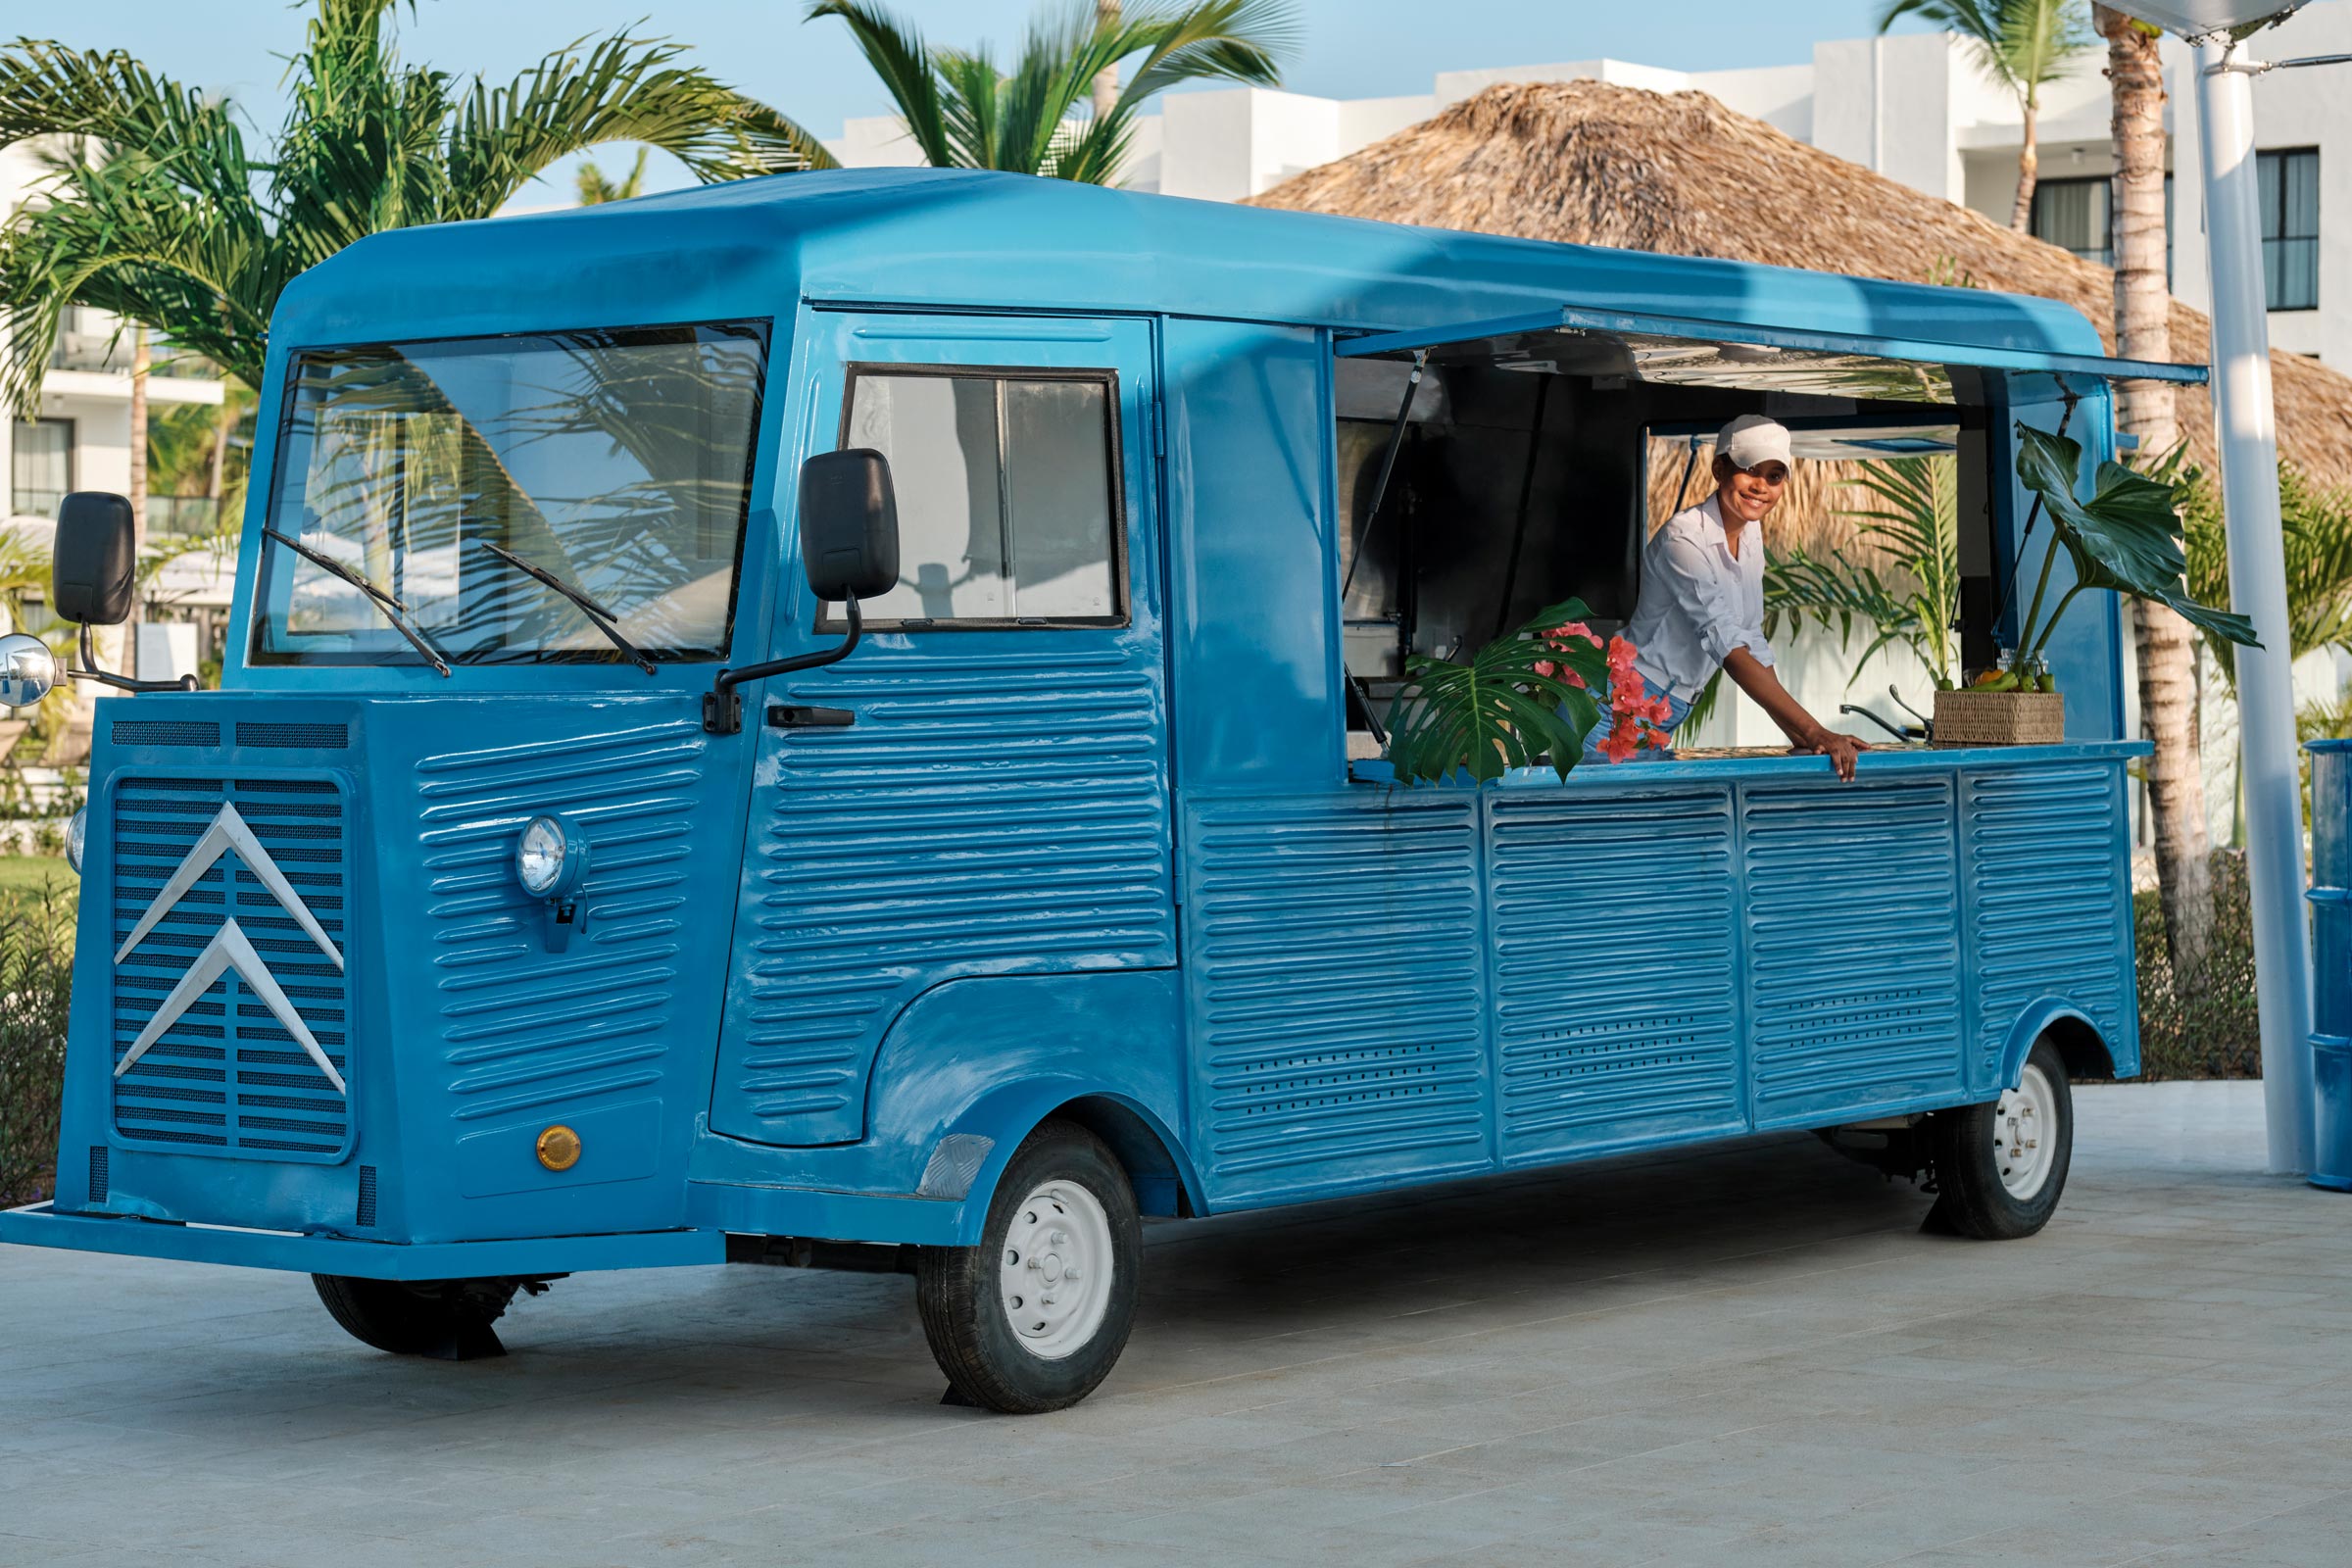 Food Truck at a Punta Cana Resort